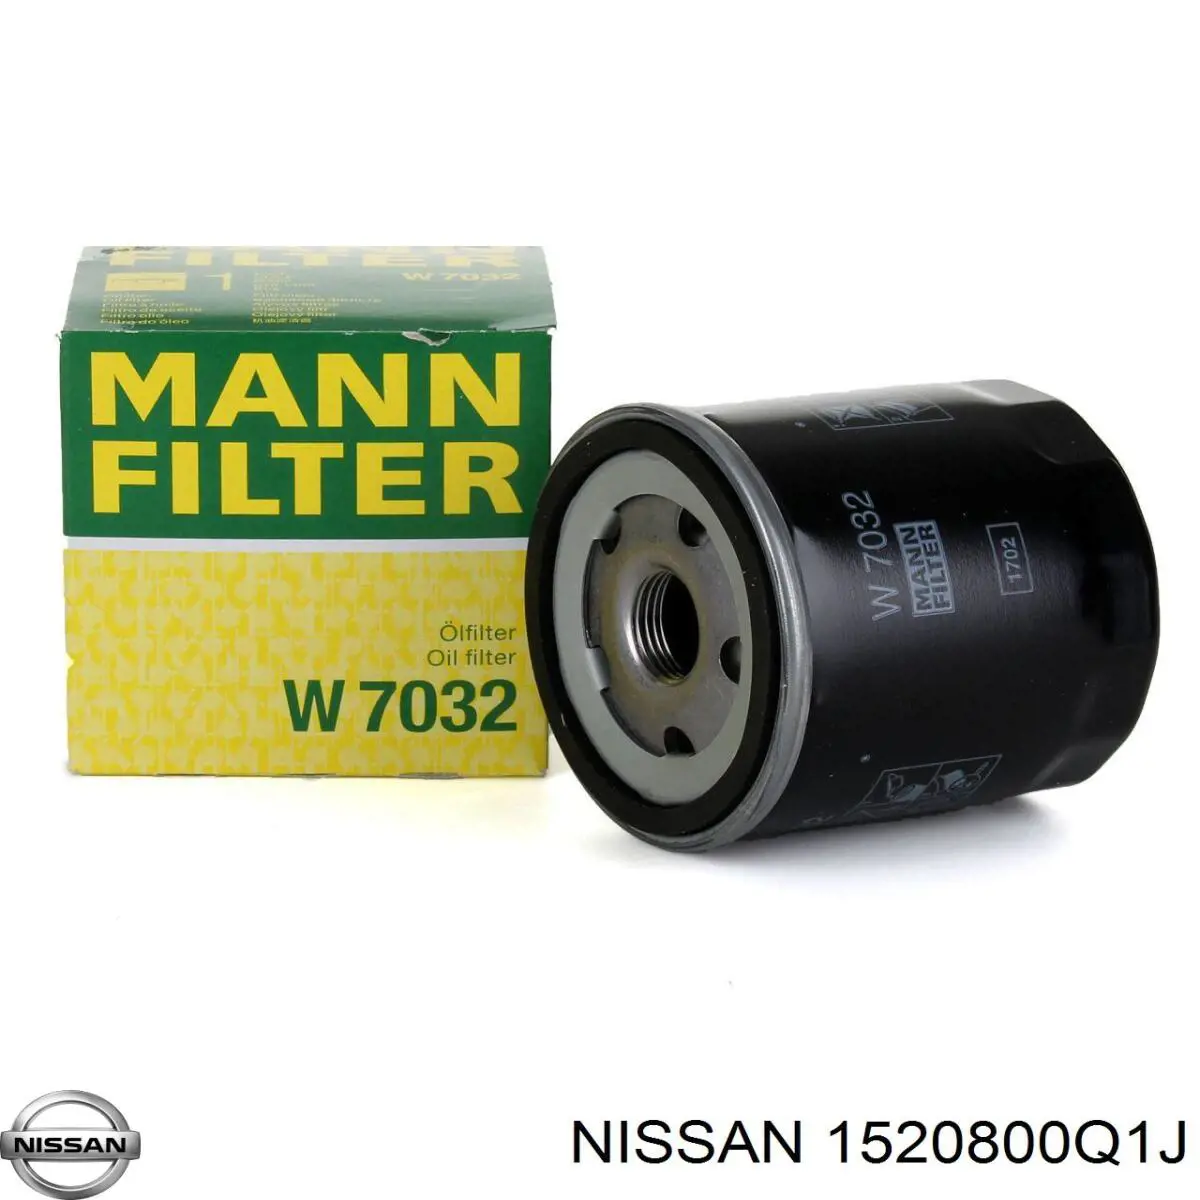 1520800Q1J Nissan filtro de aceite